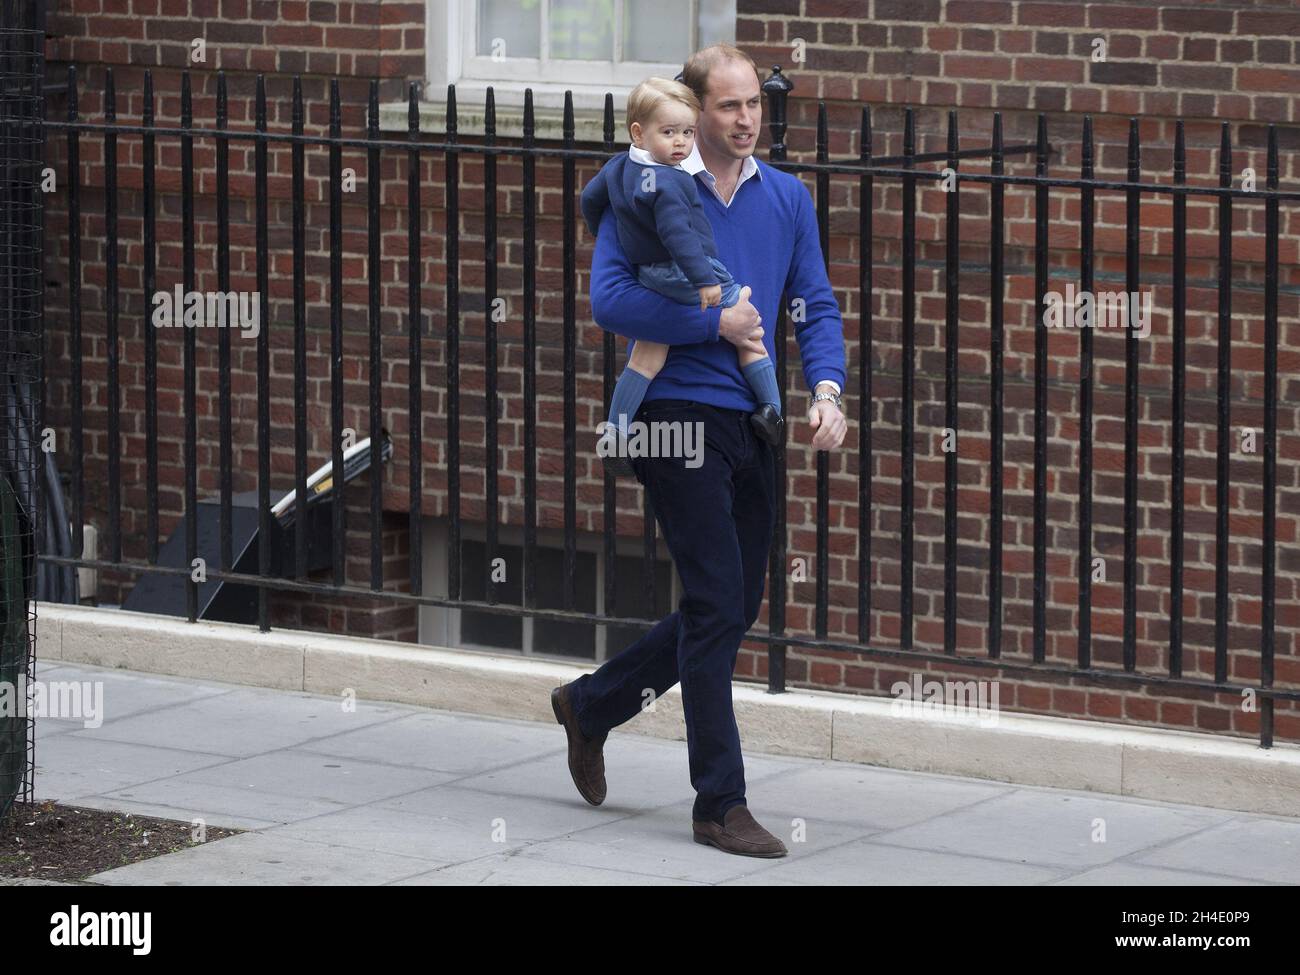 Il Duca di Cambridge e il Principe Giorgio arrivano all'ala Lindo all'ospedale St. Mary di Londra, dopo la nascita della sua figlia, la principessa Charlotte. Foto datata: Sabato 2 maggio 2015. Il credito fotografico deve essere: Isabel Infantes / EMPICS Entertainment. Foto Stock